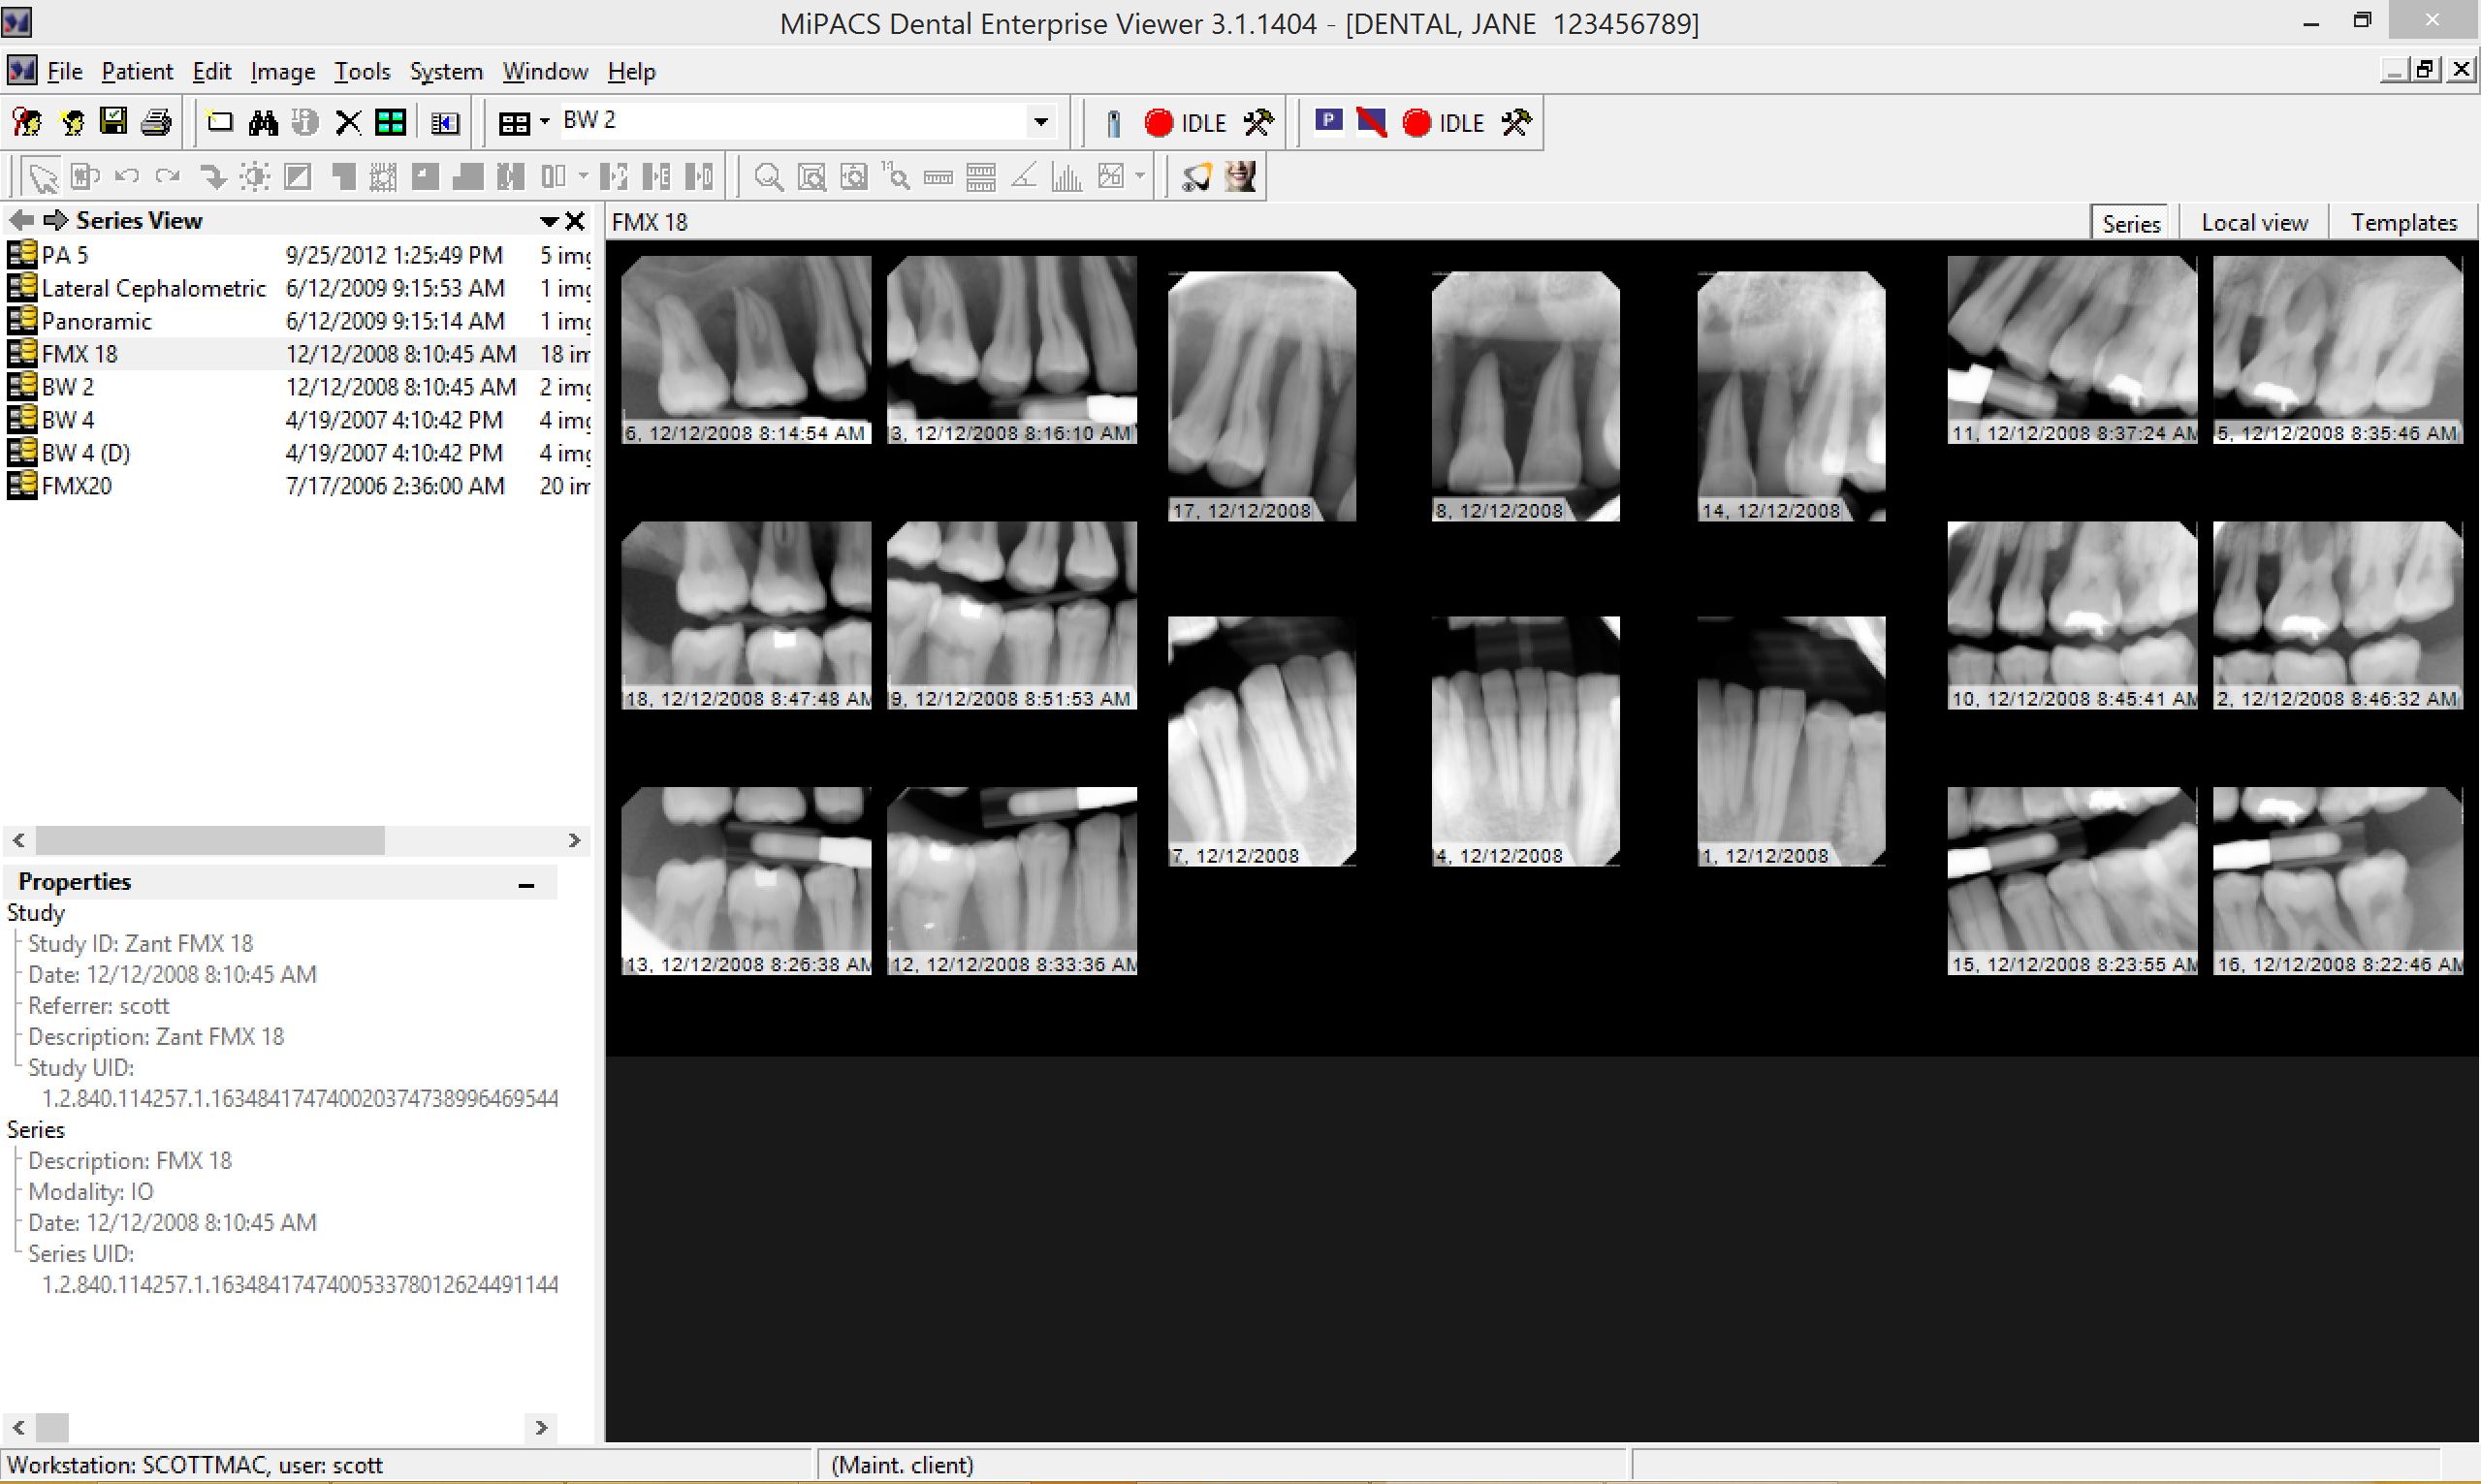 invivo dental viewer download cnet